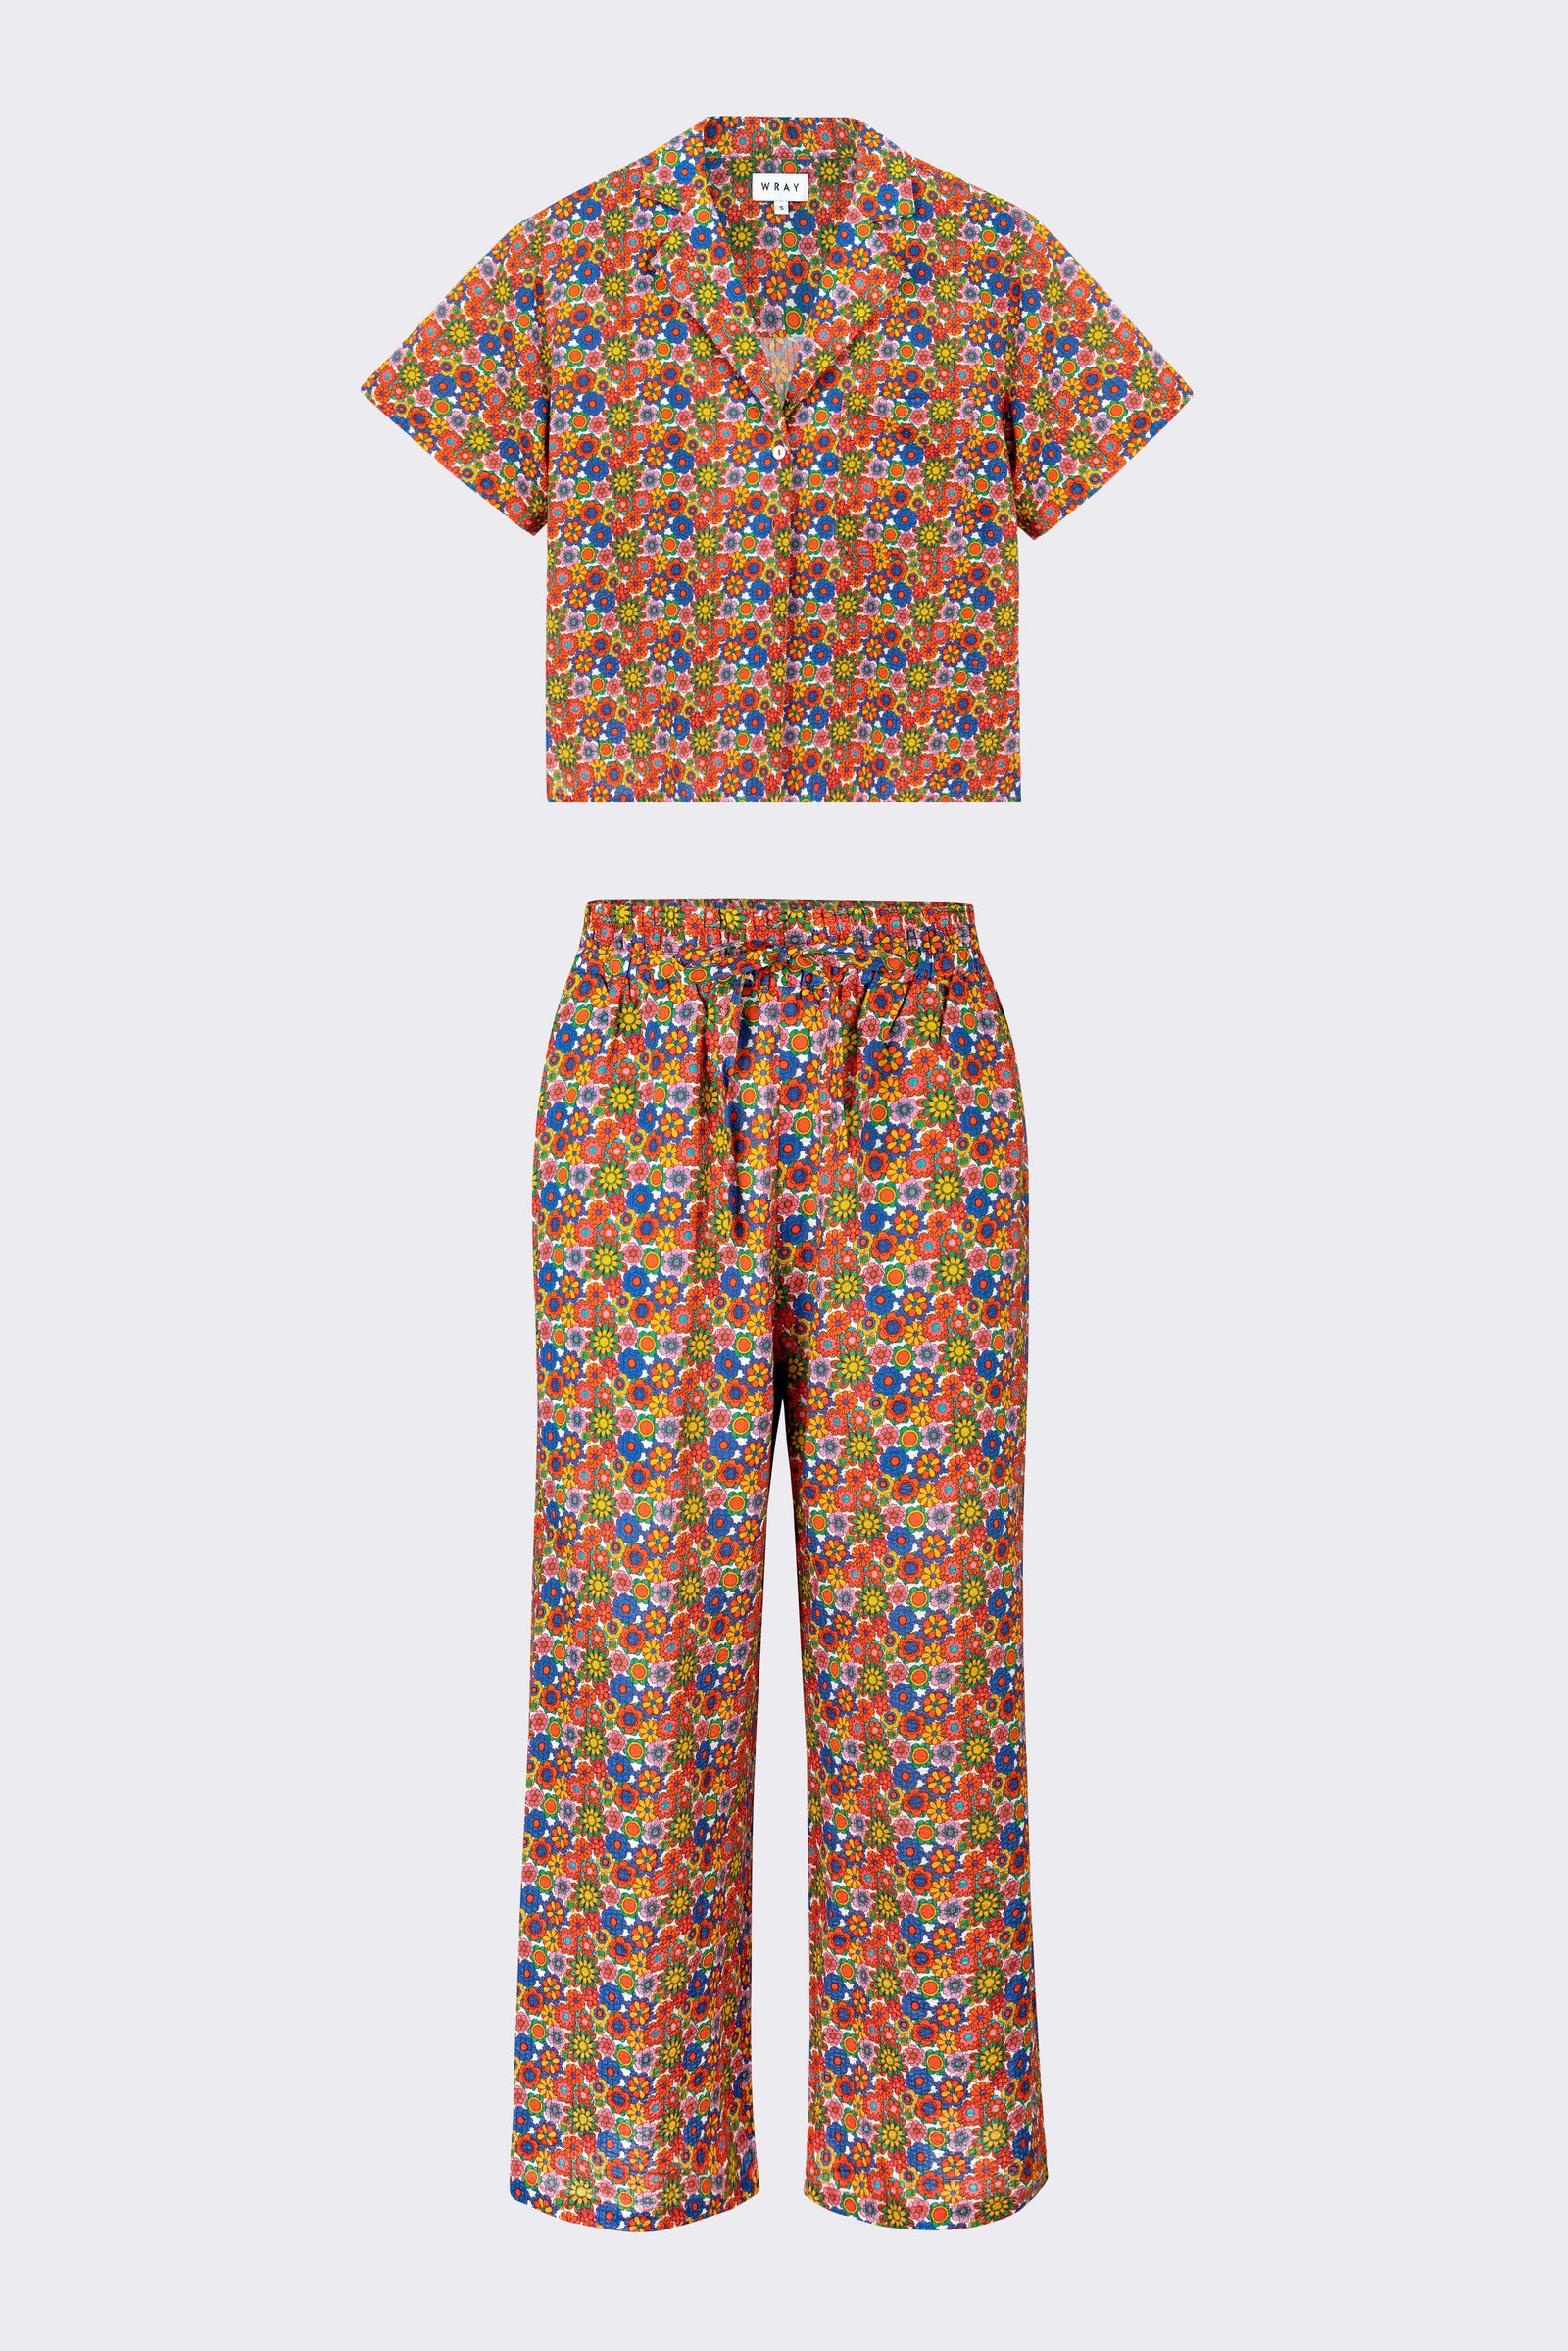 Best Plus Size Pajamas 2023